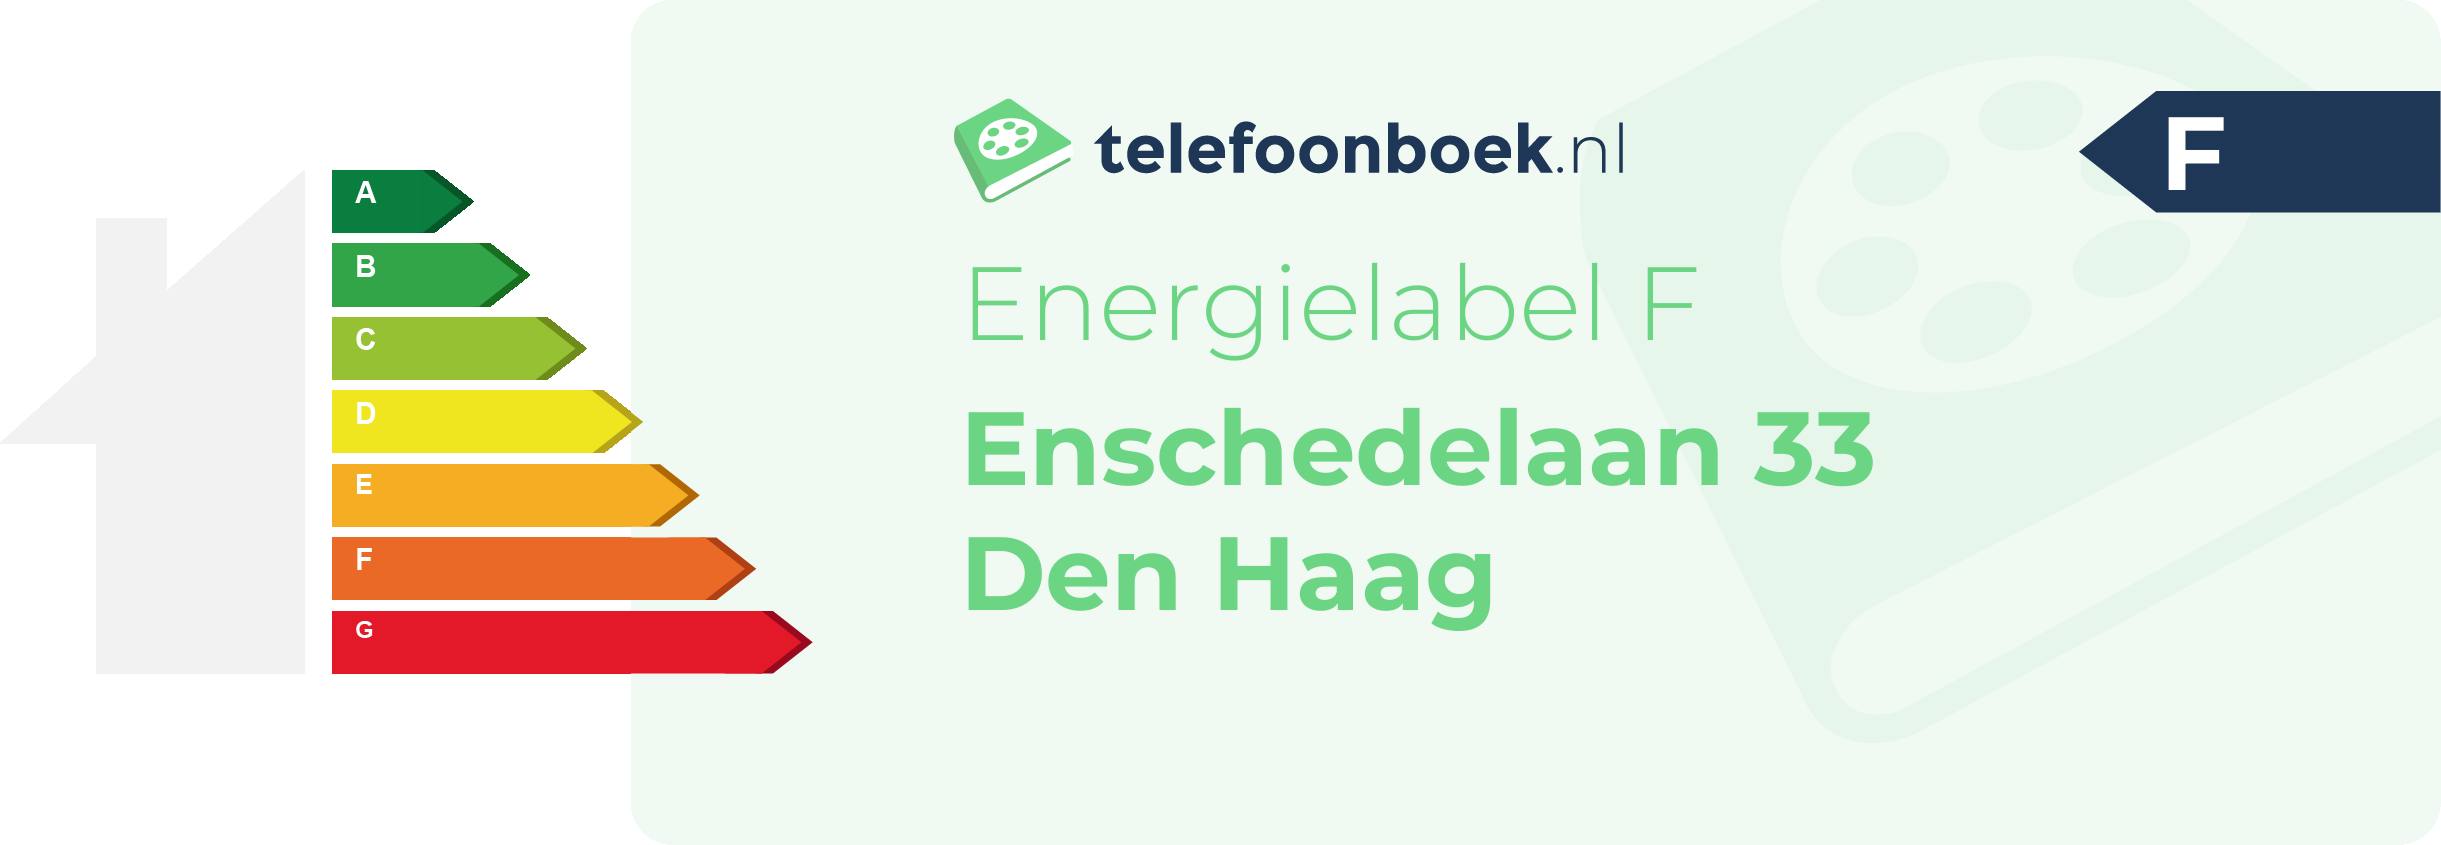 Energielabel Enschedelaan 33 Den Haag